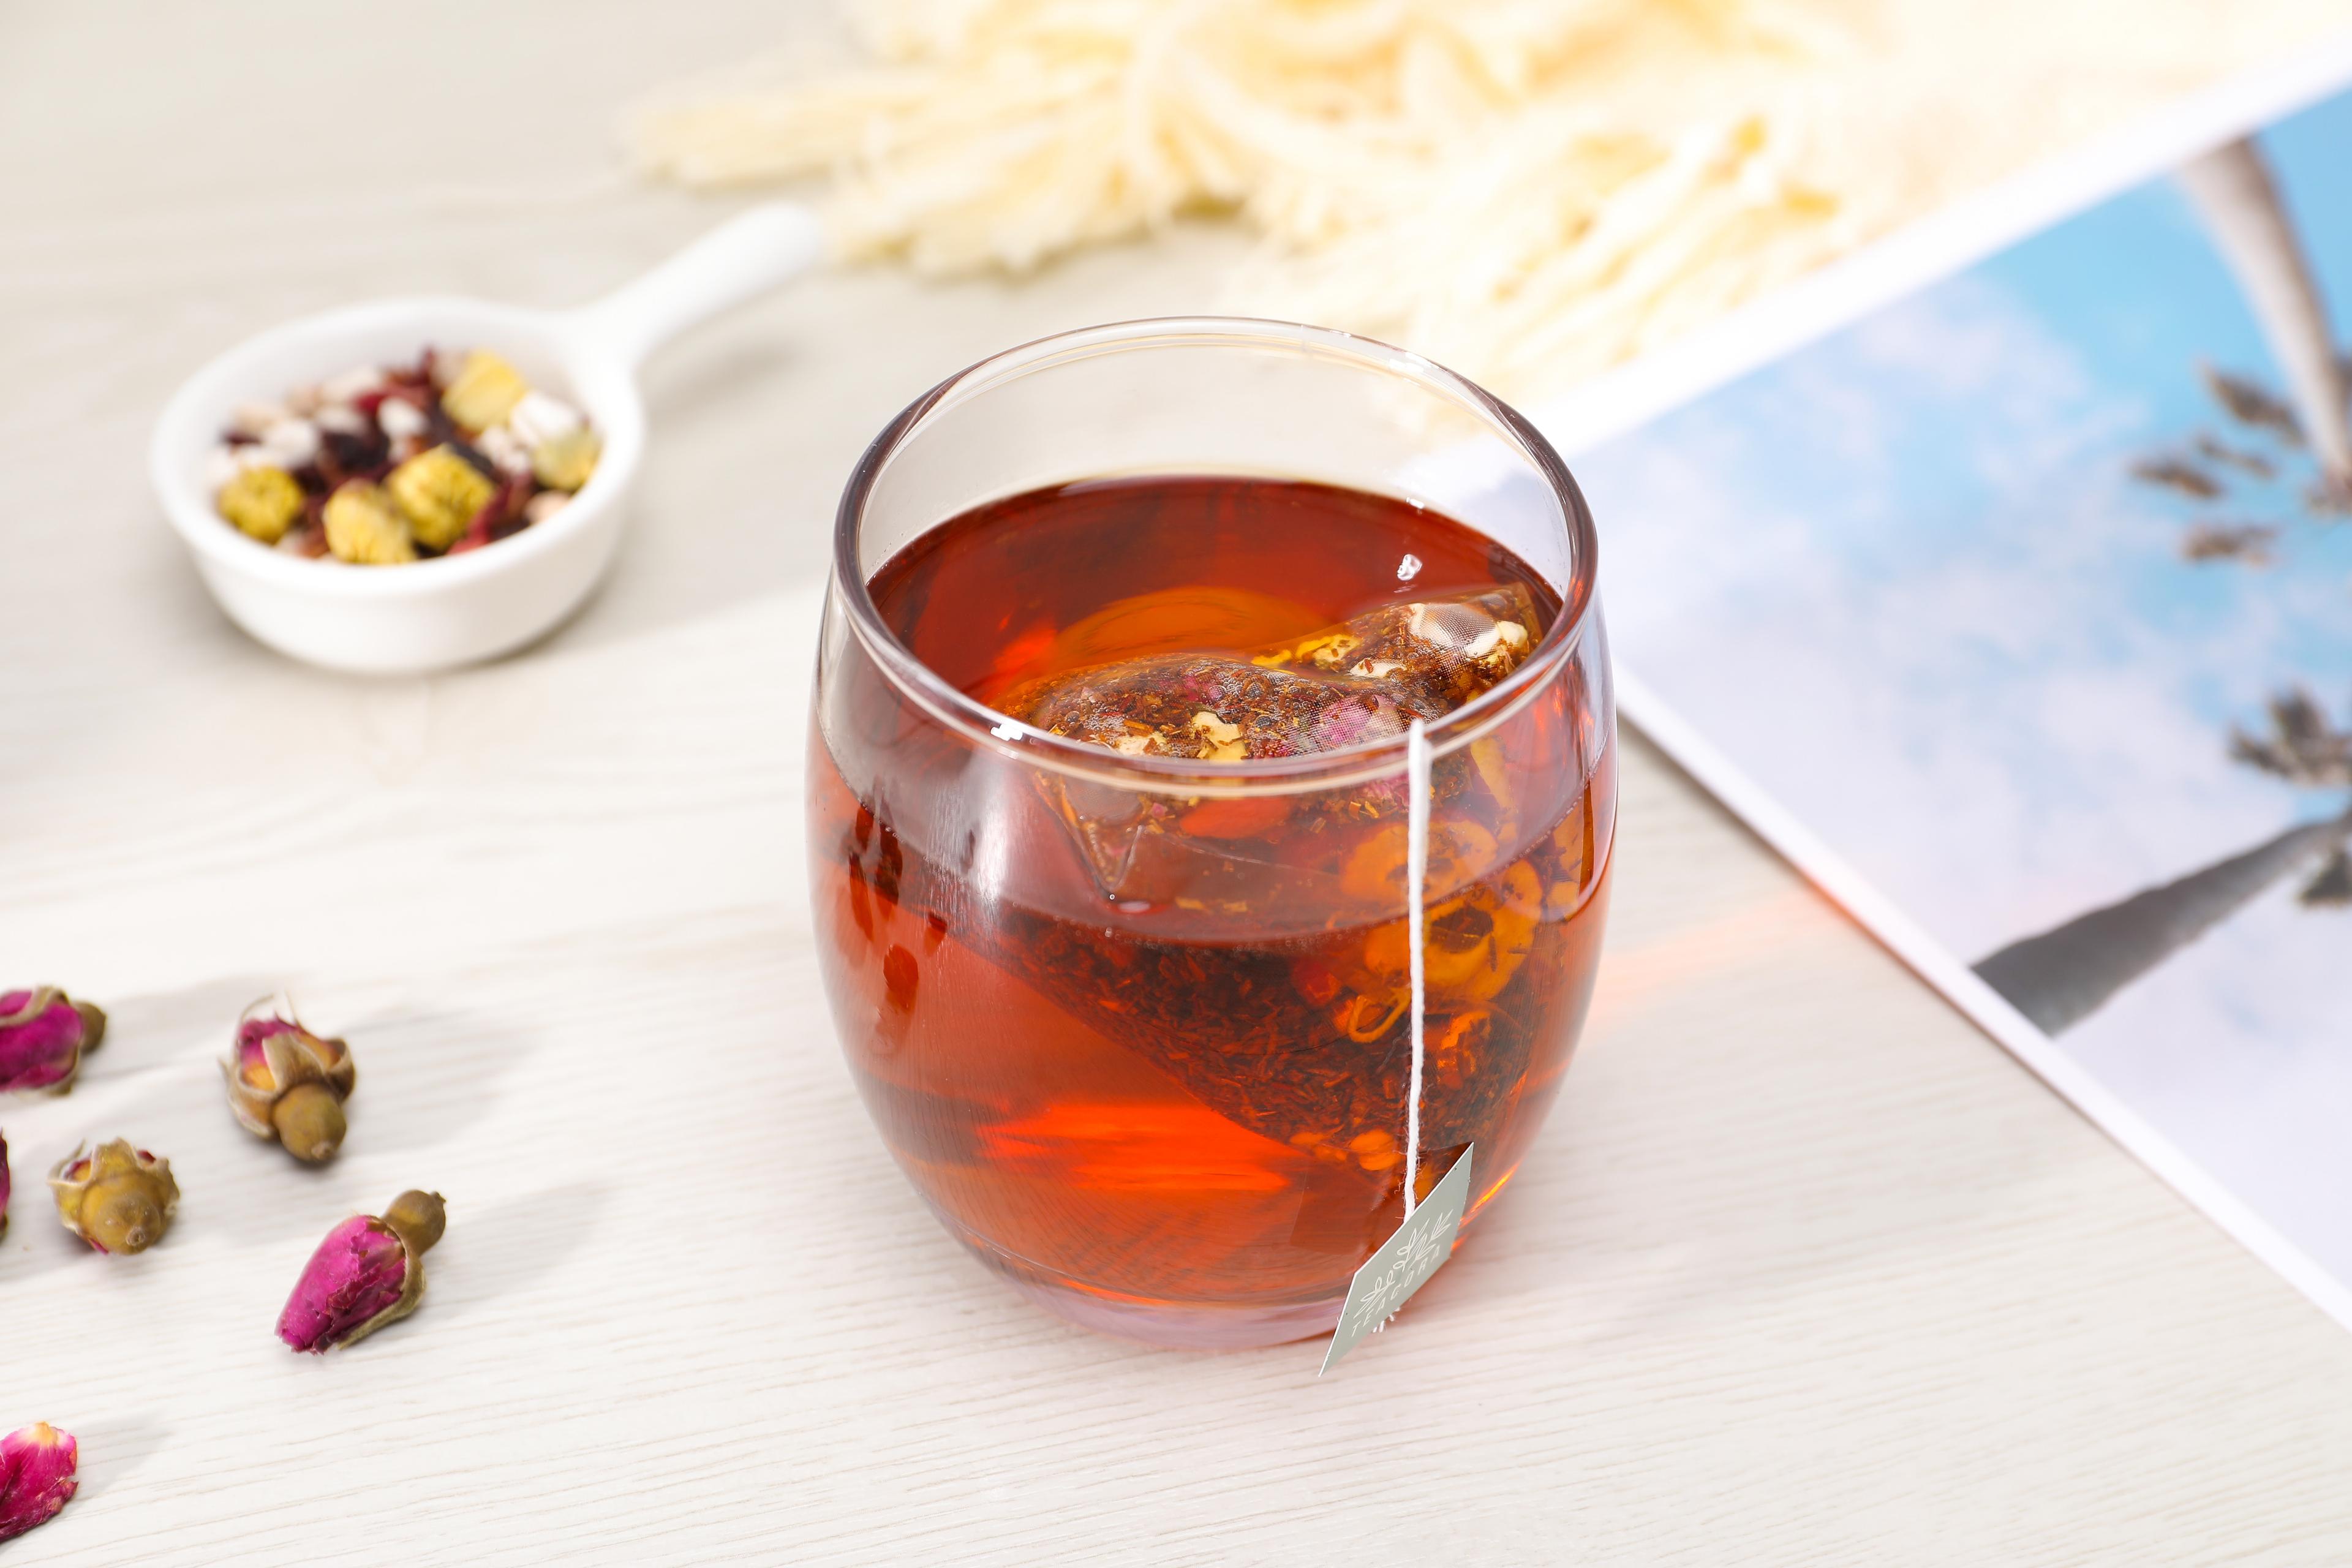 Herbata Rooibos - Czerwona herbata o wielu korzyściach zdrowotnych. Rooibos – dlaczego warto pić herbatę z czerwonokrzewu? Właściwości zdrowotne herbaty rooibos. Herbata Rooibos – Czerwonokrzew Afrykański